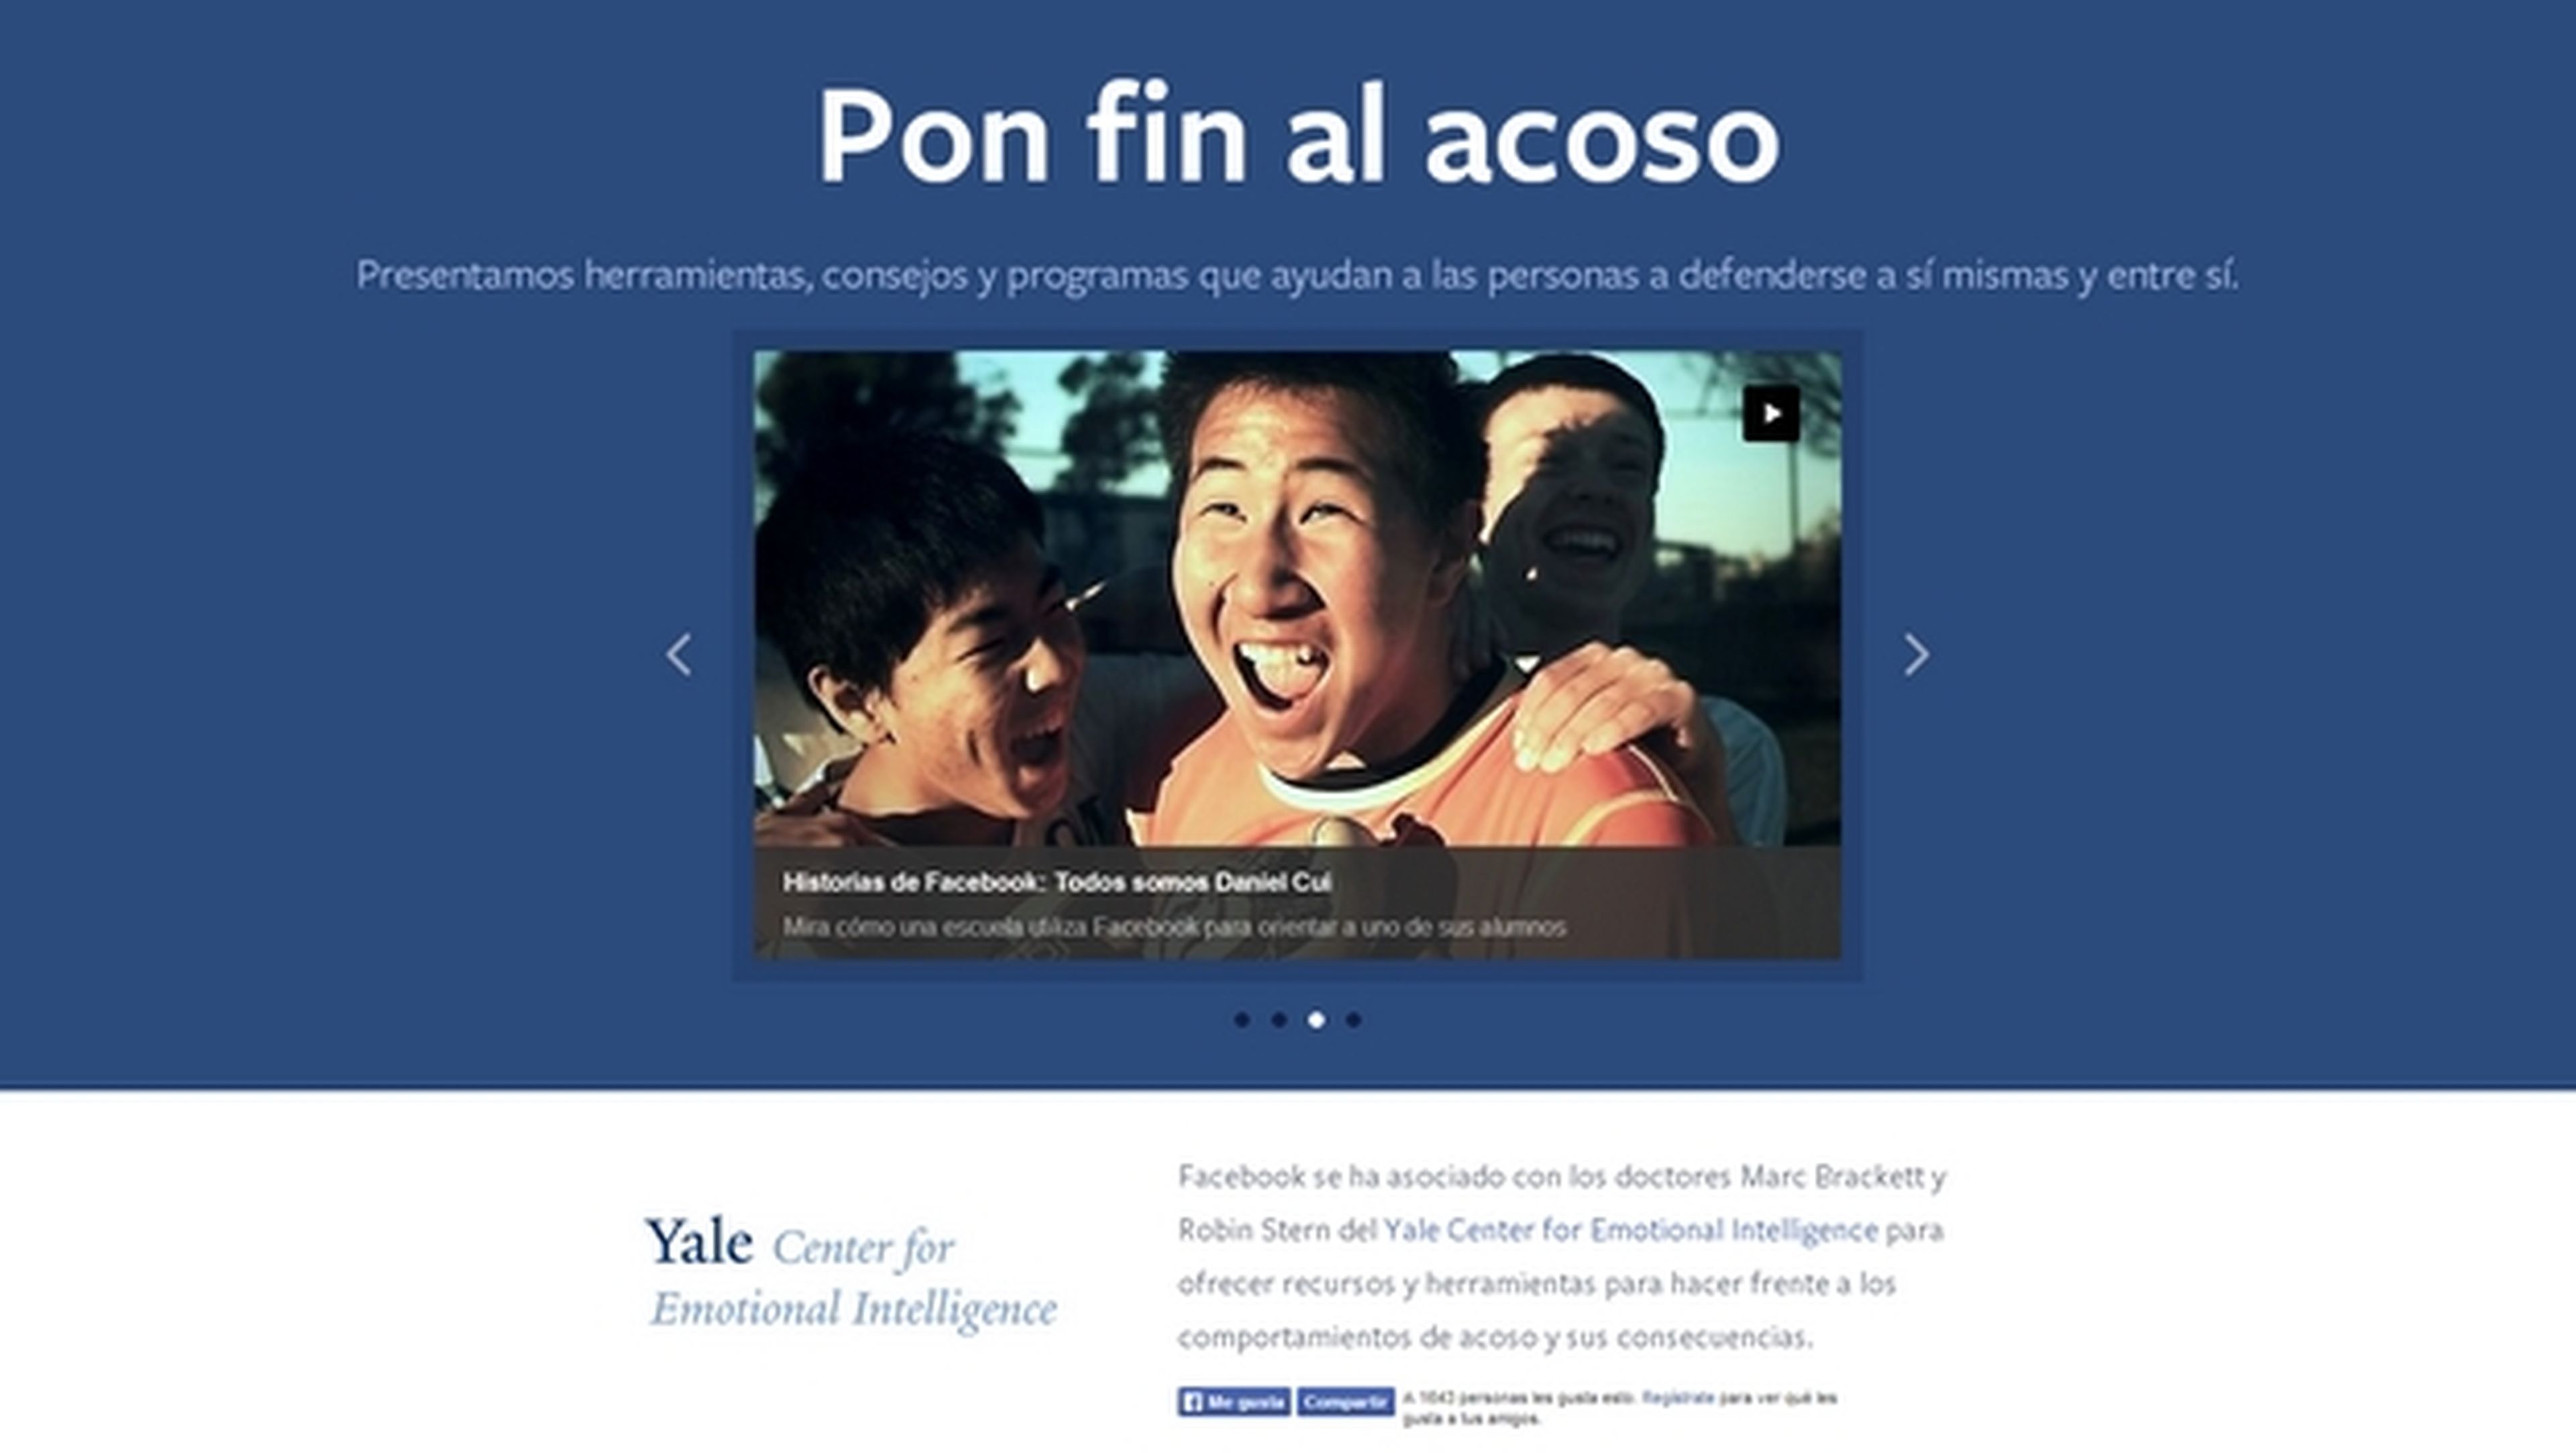 Facebook estrena web llamada Centro de Prevención del Acoso, para luchar contra el ciberacoso.